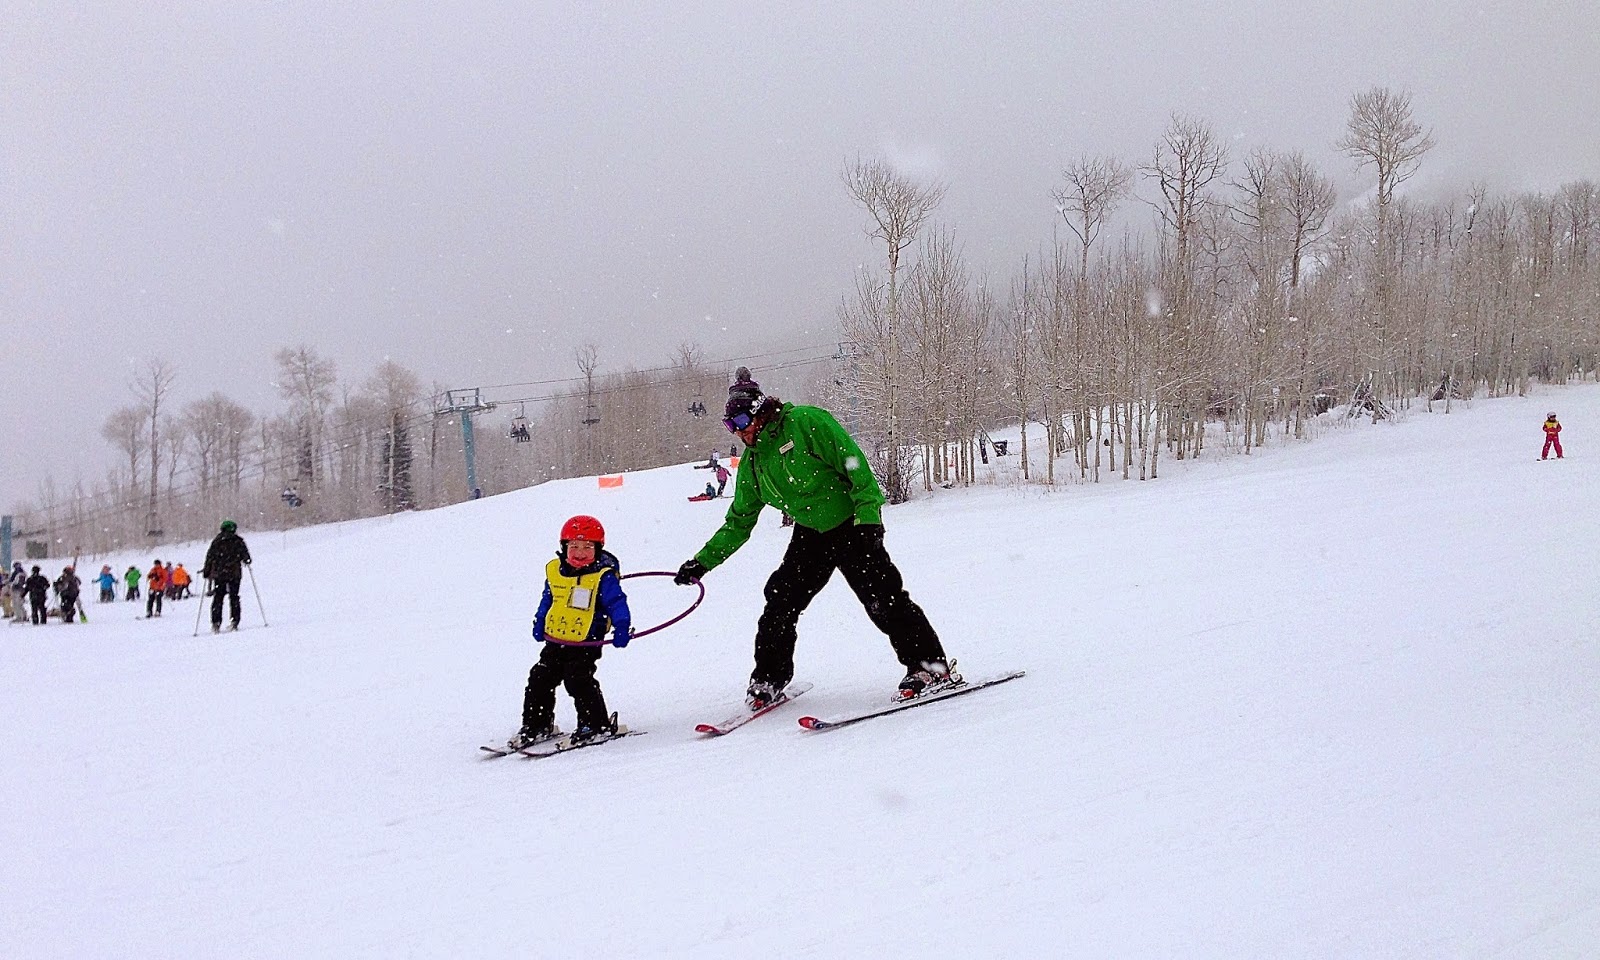 First ski lesson